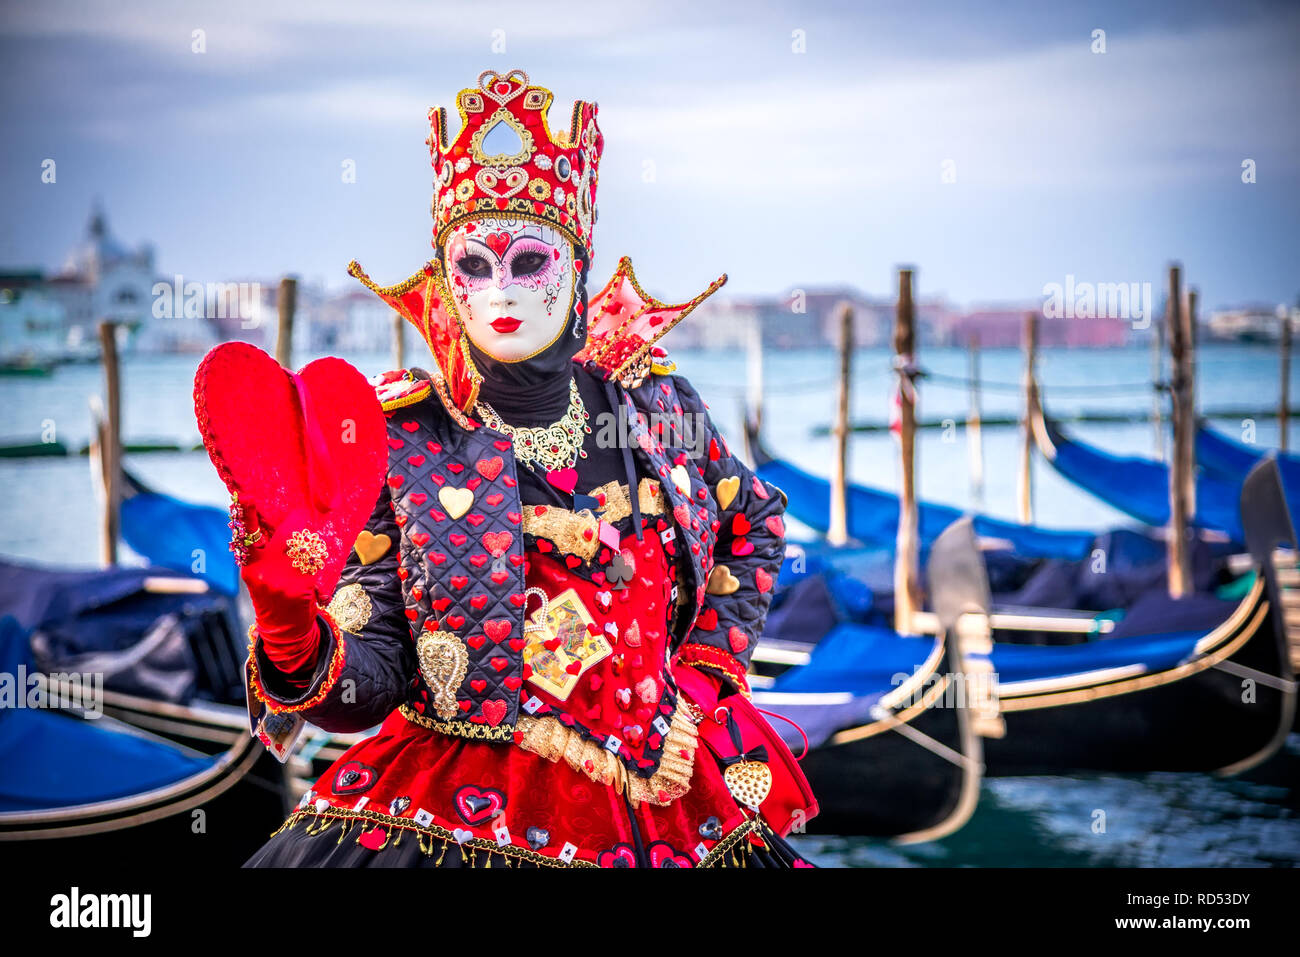 Venecia, el Carnaval de Venecia, con hermosa máscara en la Plaza de San Marcos y el Gran Canal, Italia Foto de stock